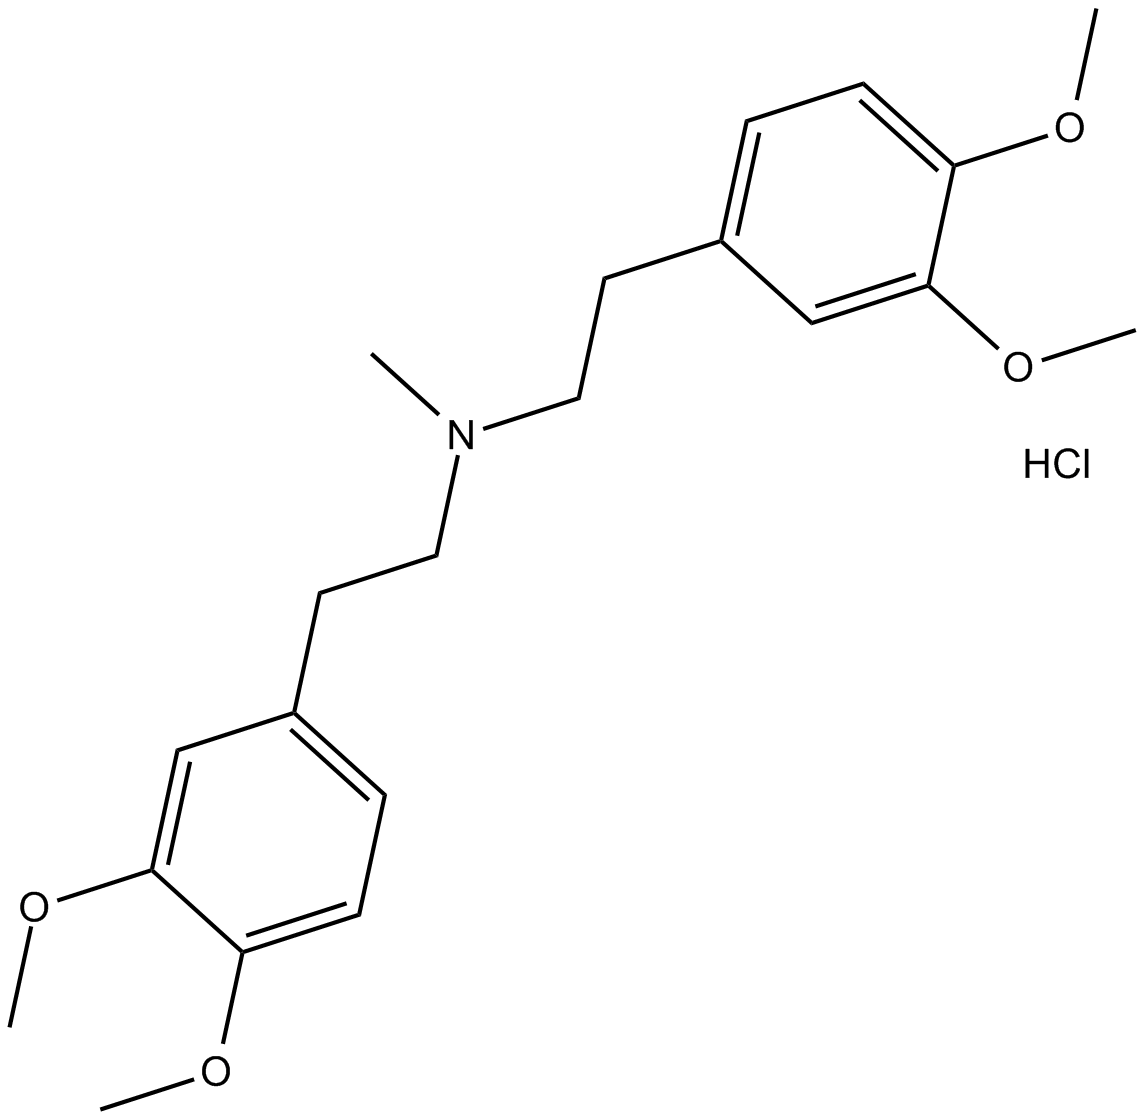 YS-035 hydrochloride